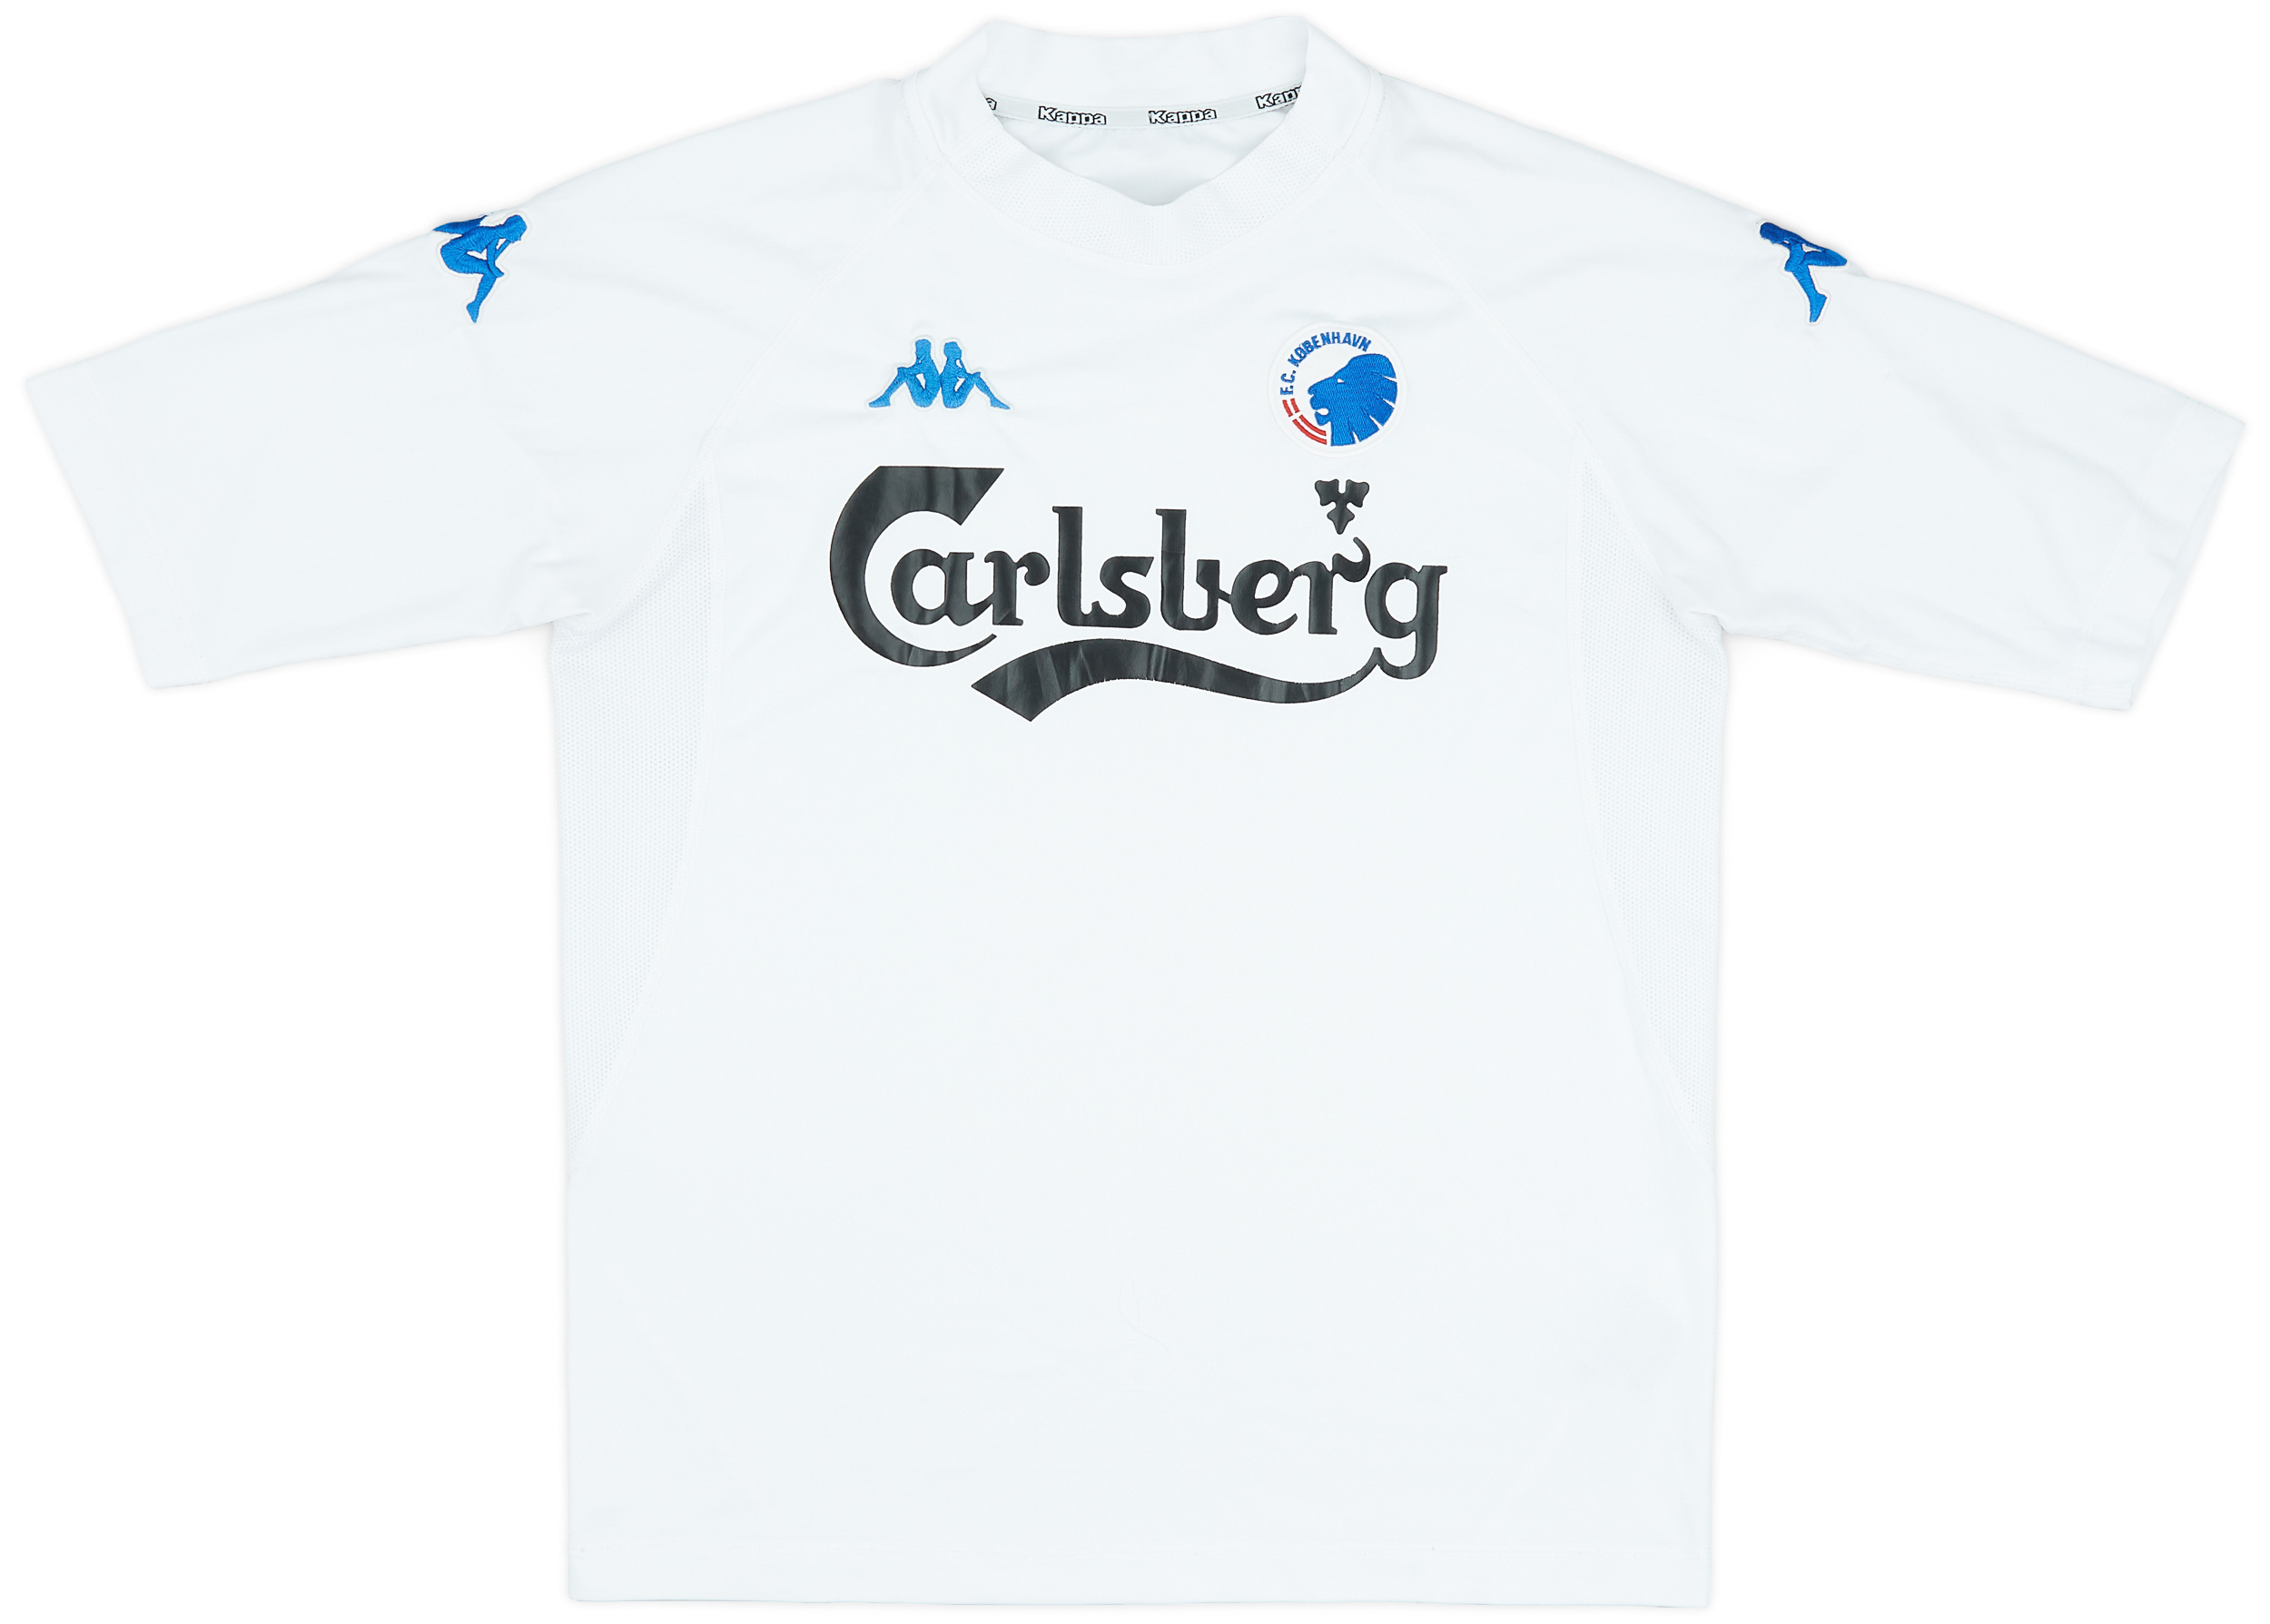 København  home shirt  (Original)